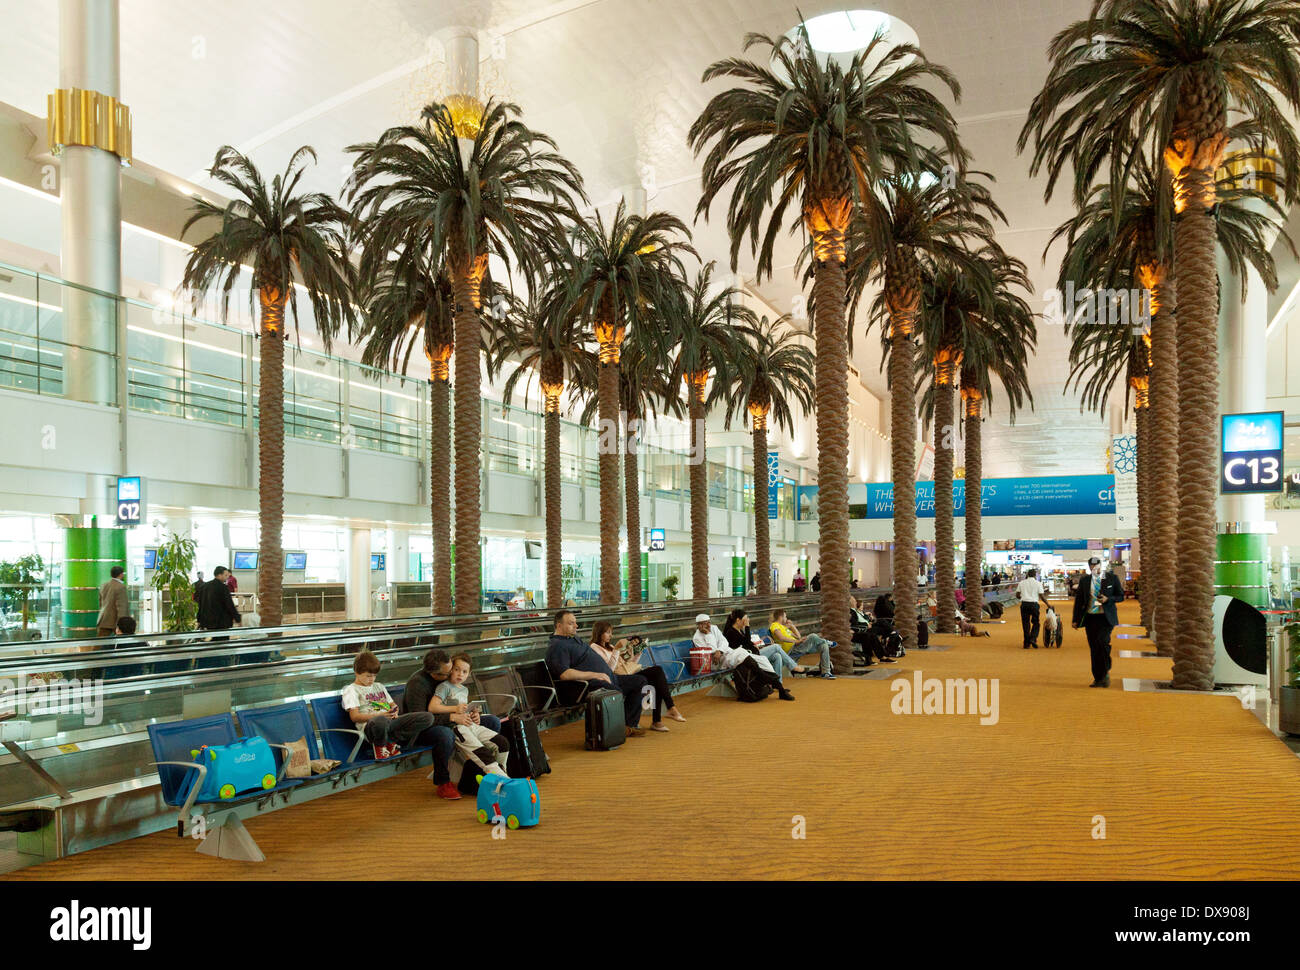 Künstliche Palmen in Dubai Flughafen terminal Interieur, Dubai, Vereinigte Arabische Emirate, Vereinigte Arabische Emirate Naher Osten Stockfoto